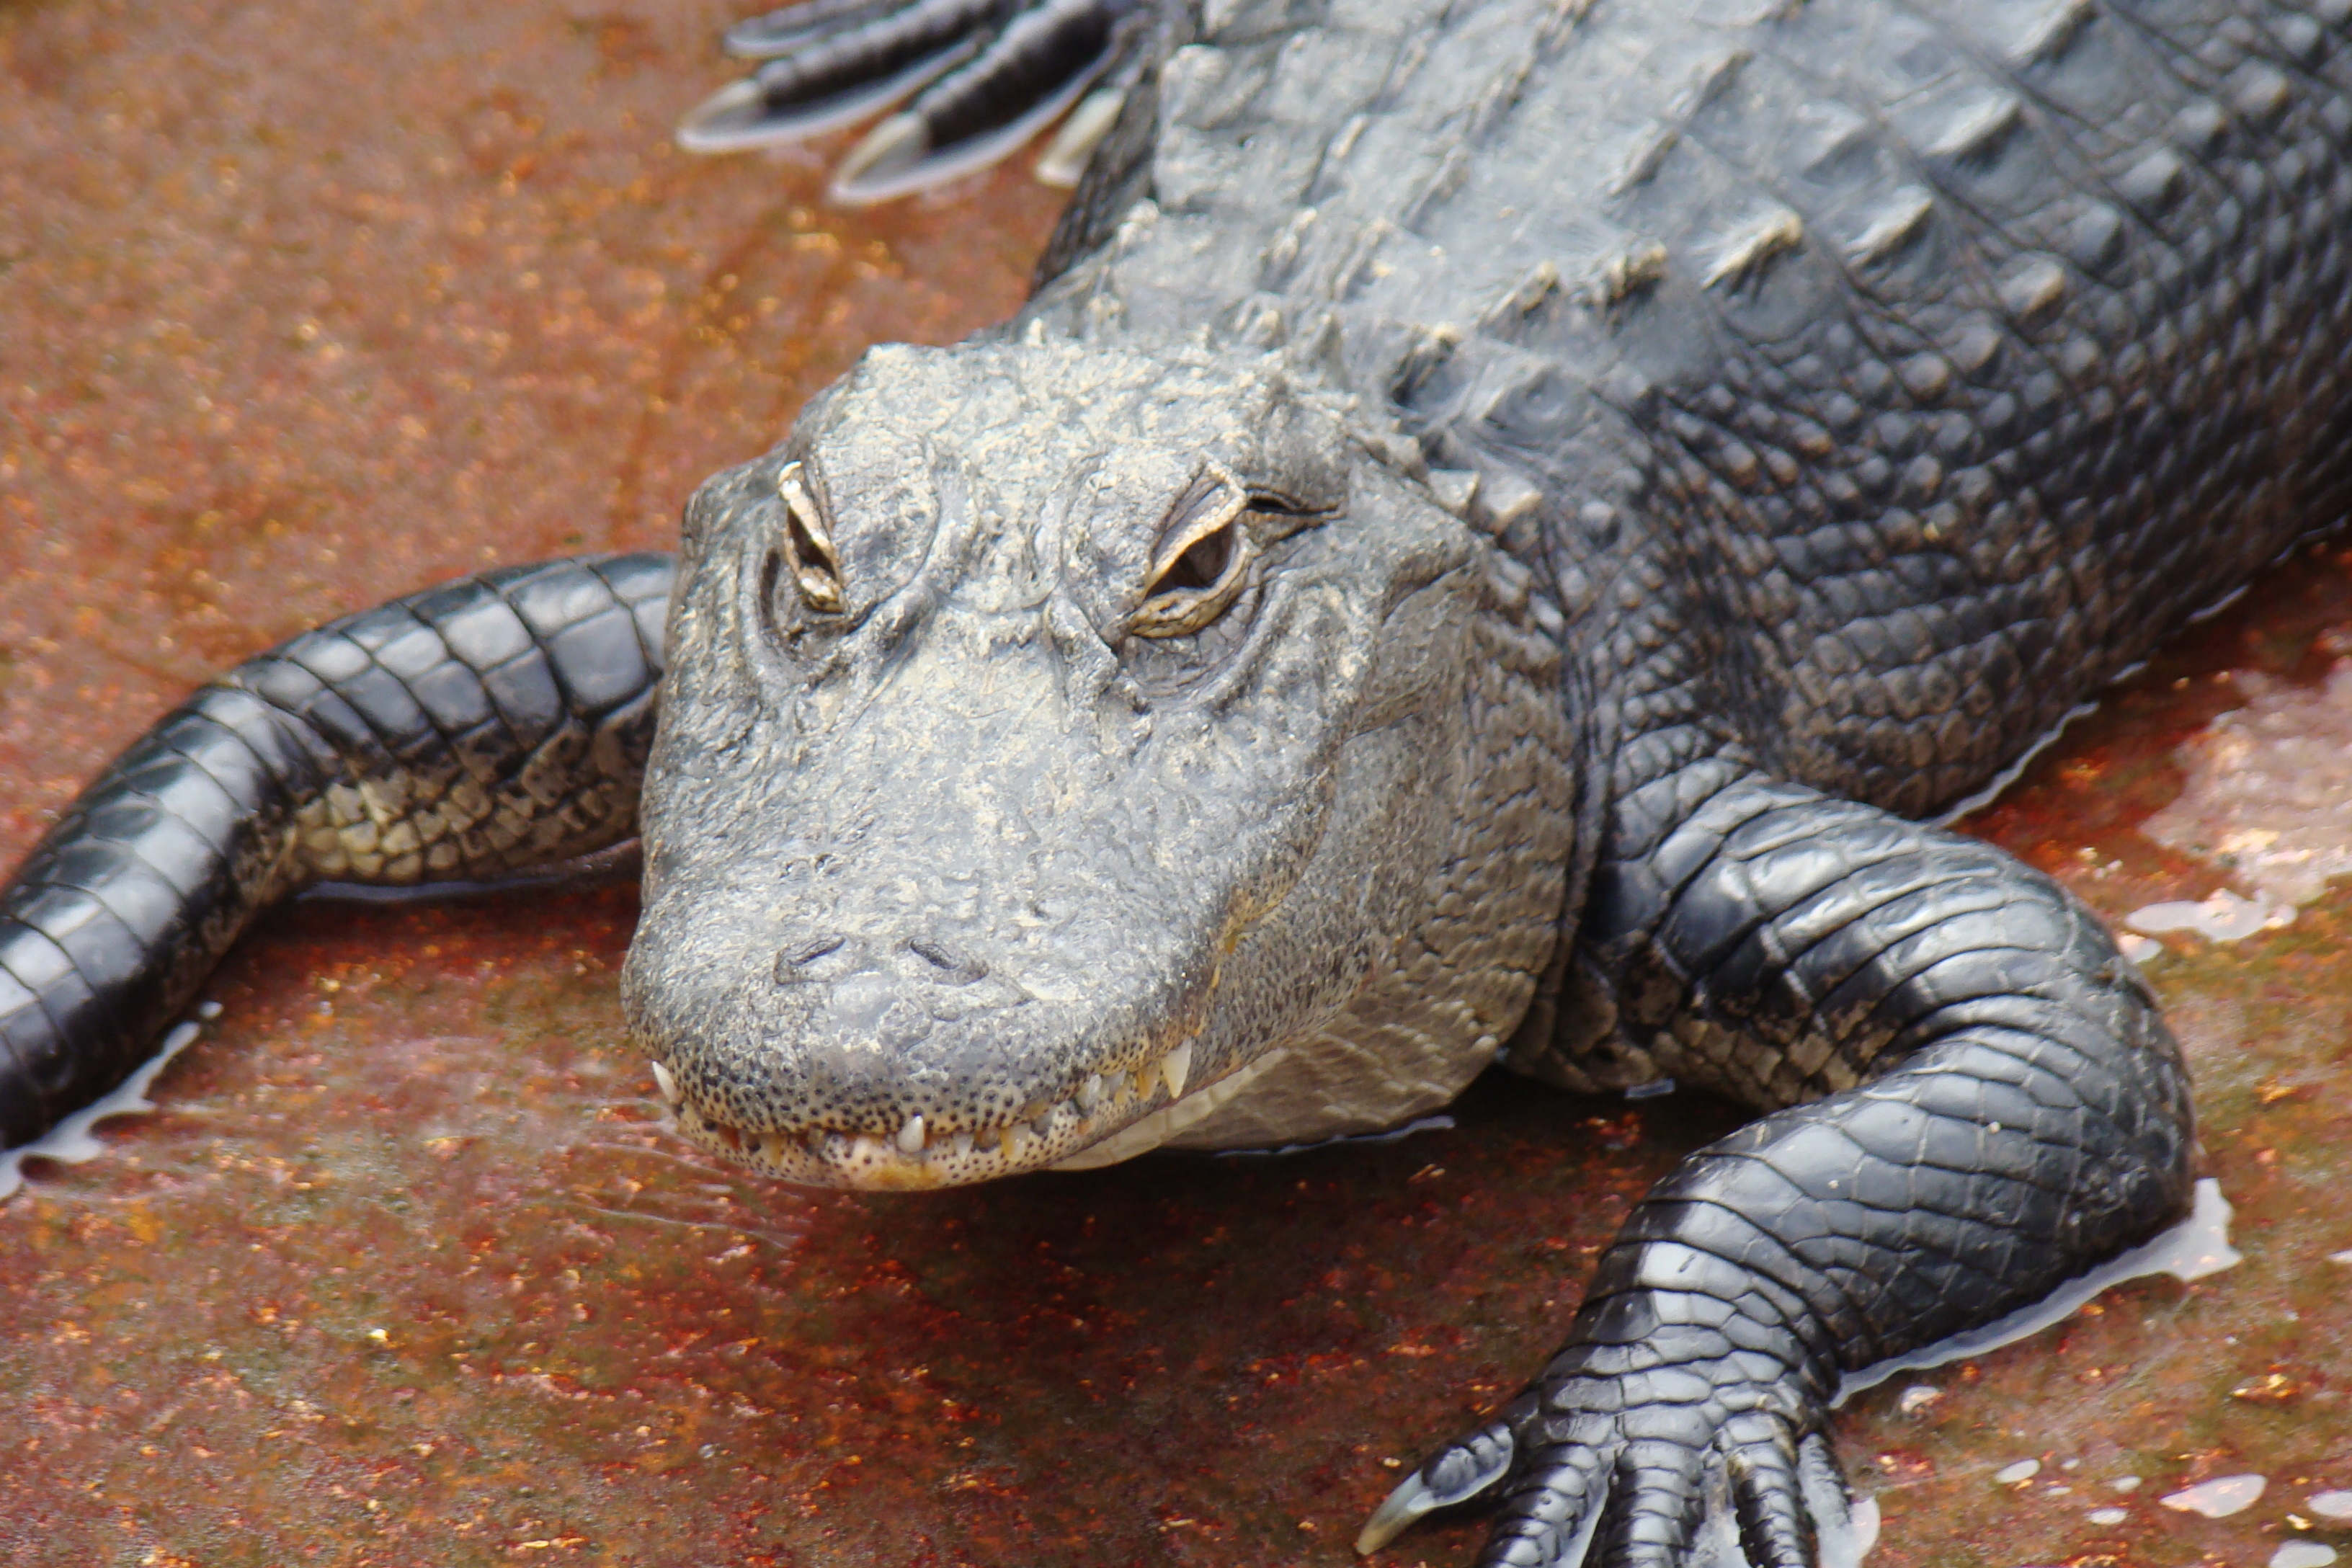 Alligator Wrestling in Florida | John Gottberg's Blog